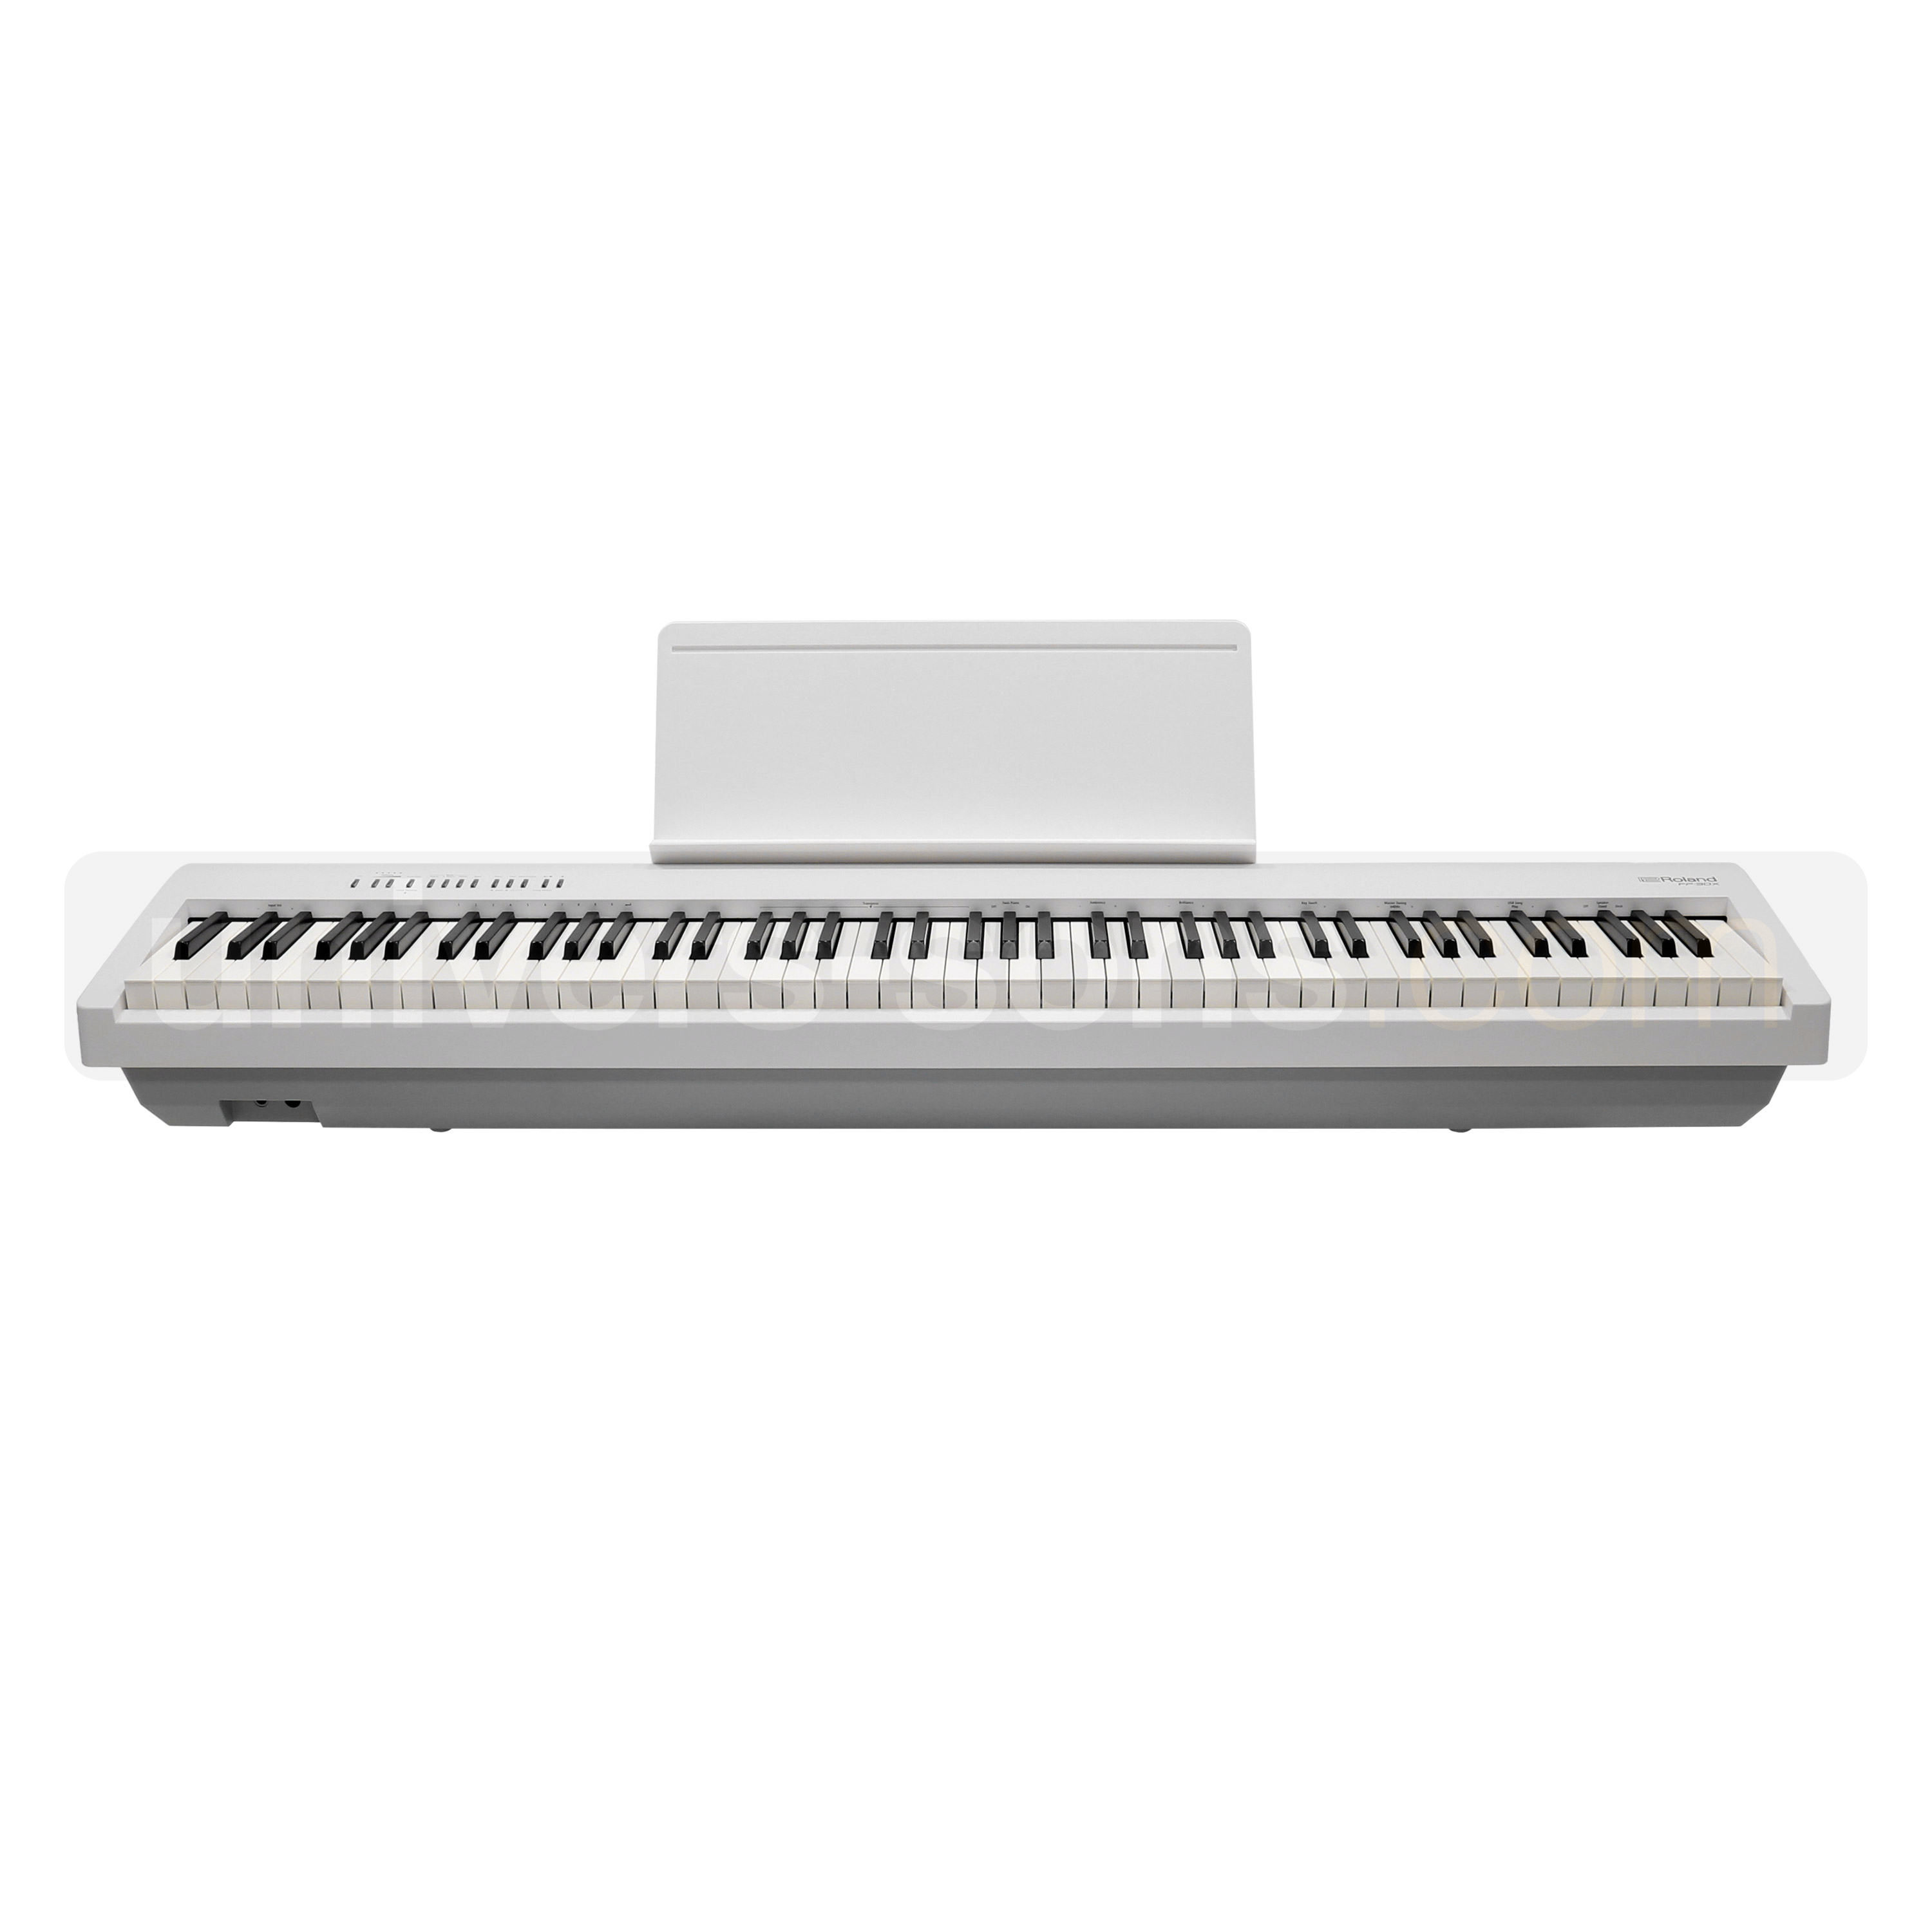 FP30X le plus populaire des pianos portables ROLAND